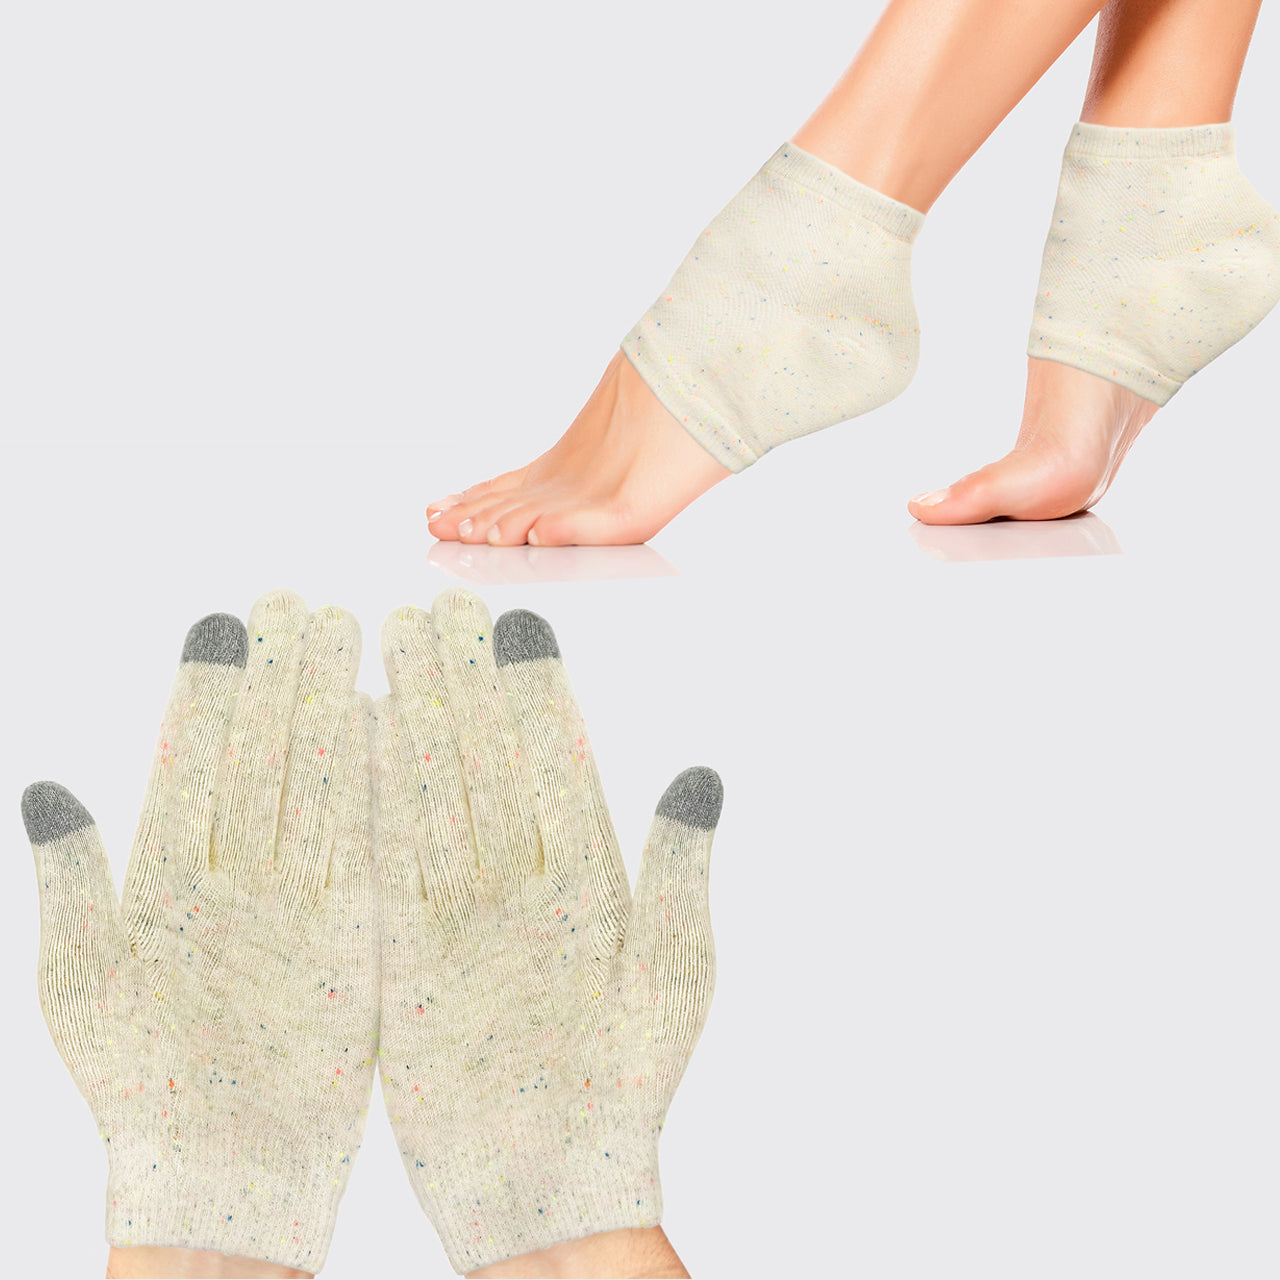 Moisturizing Socks Gloves for Repairing Softening Foot Moisturizer